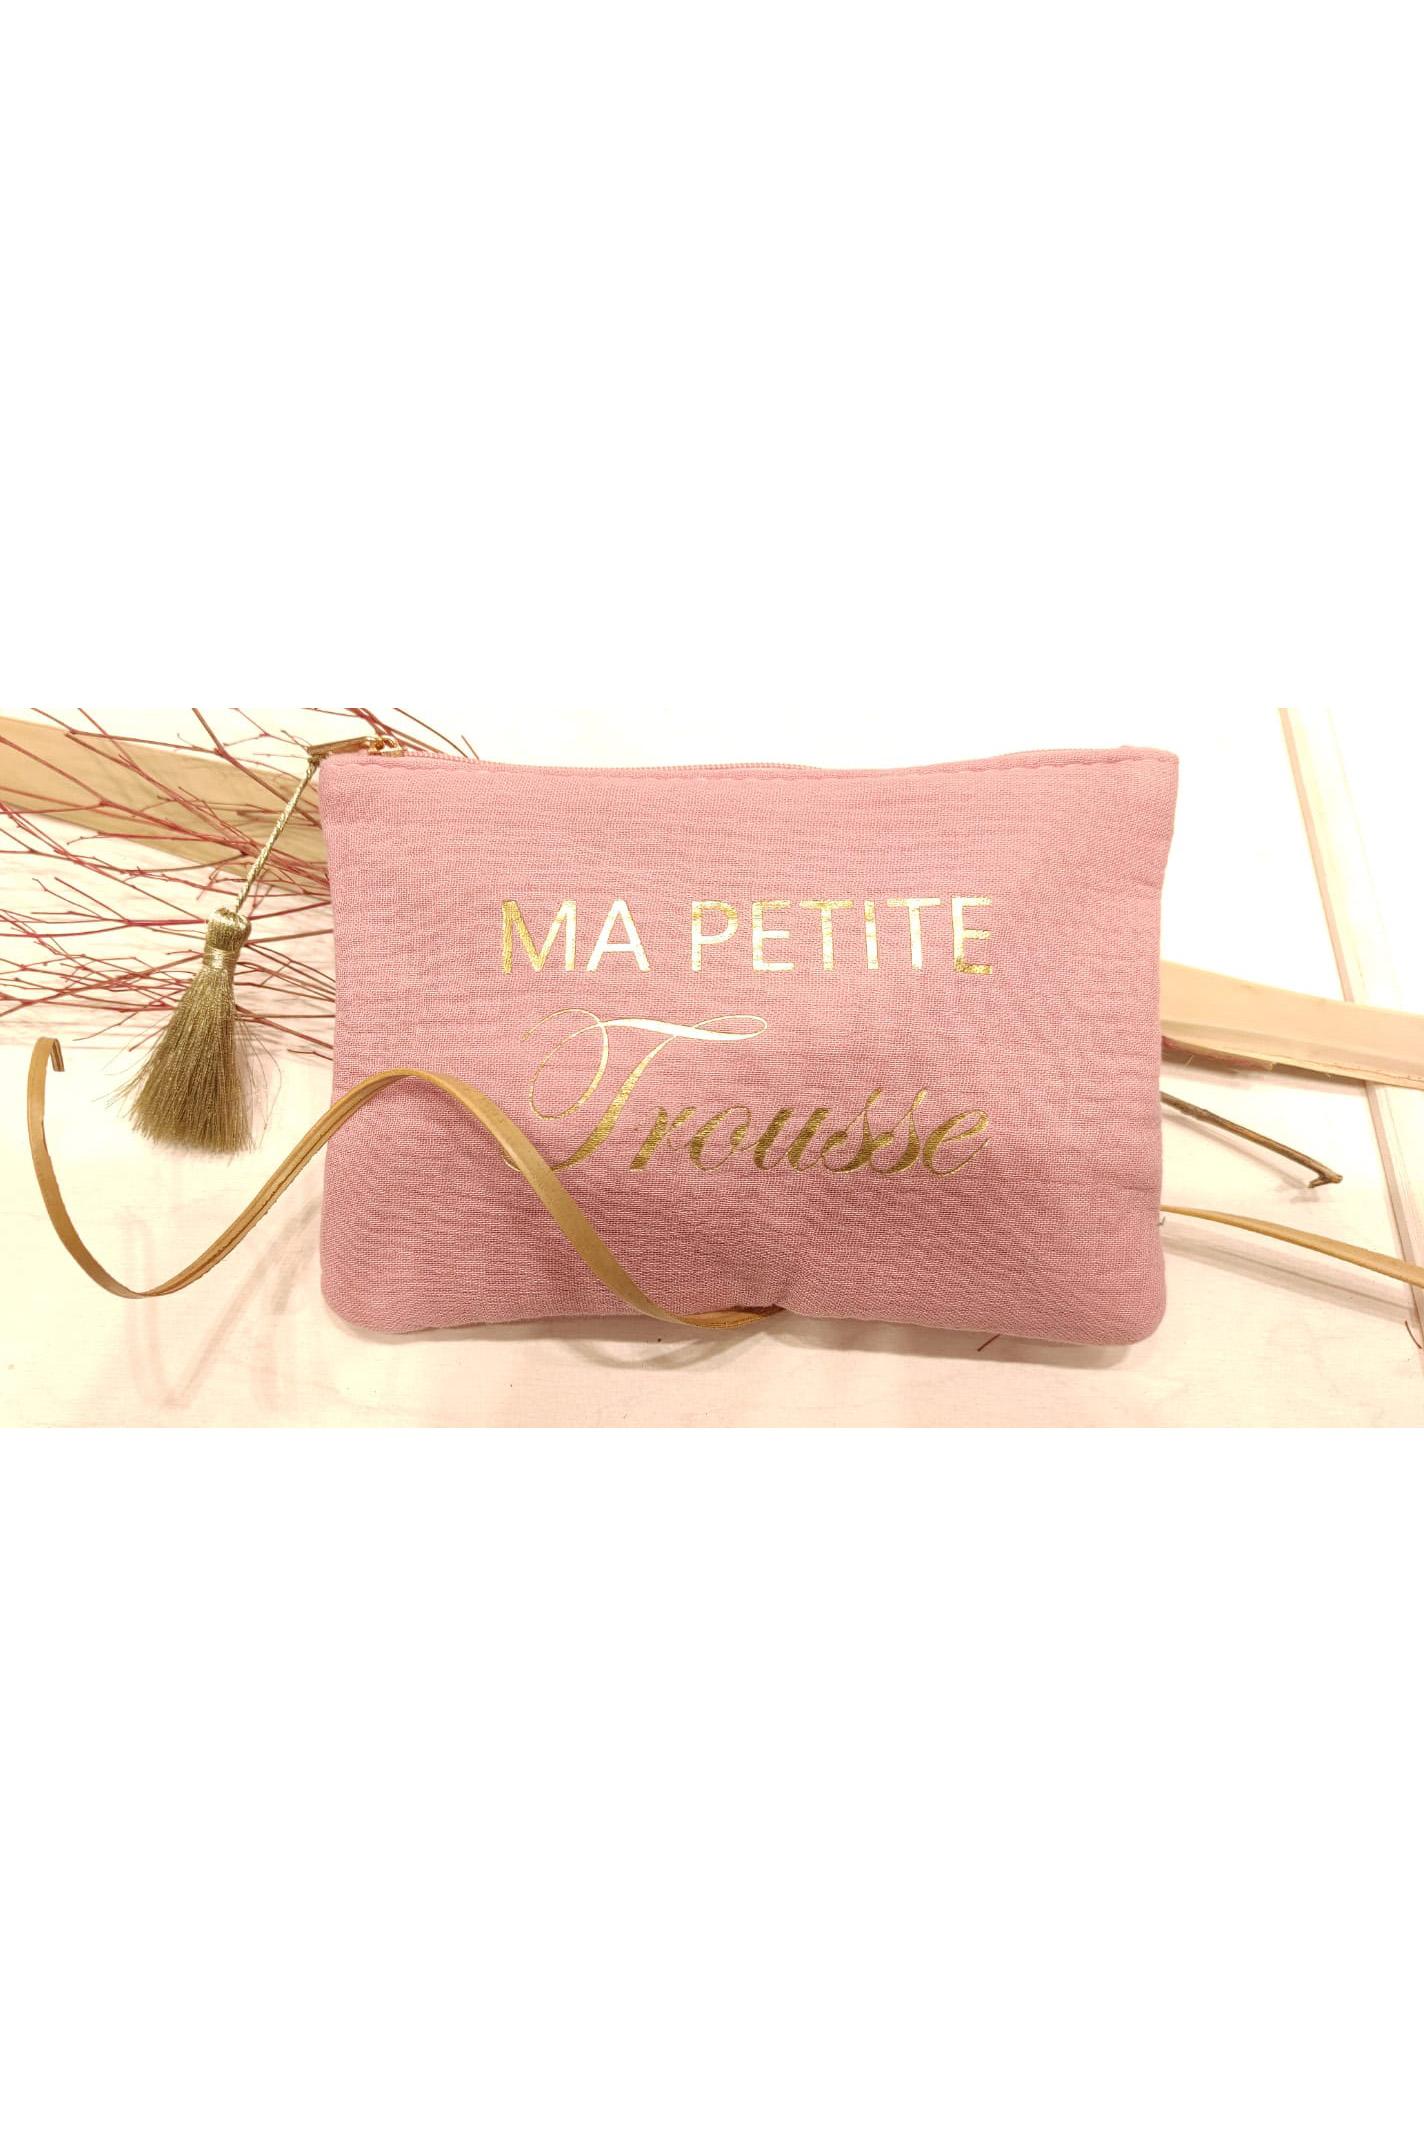 Pochettes Maroquinerie Rose LOLO & YAYA 39990 #c Efashion Paris